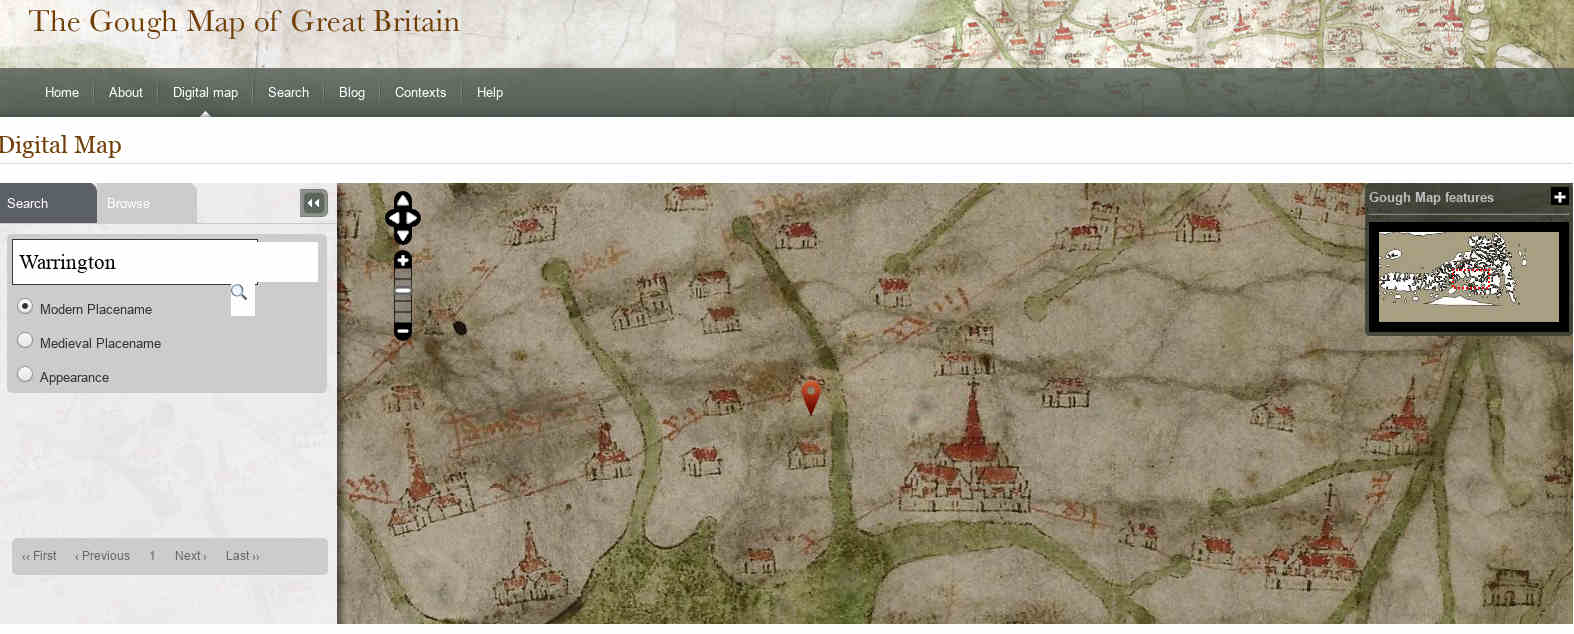 Gough Map Warrington Screenshot 2020 03 15 15 32 40 JPG